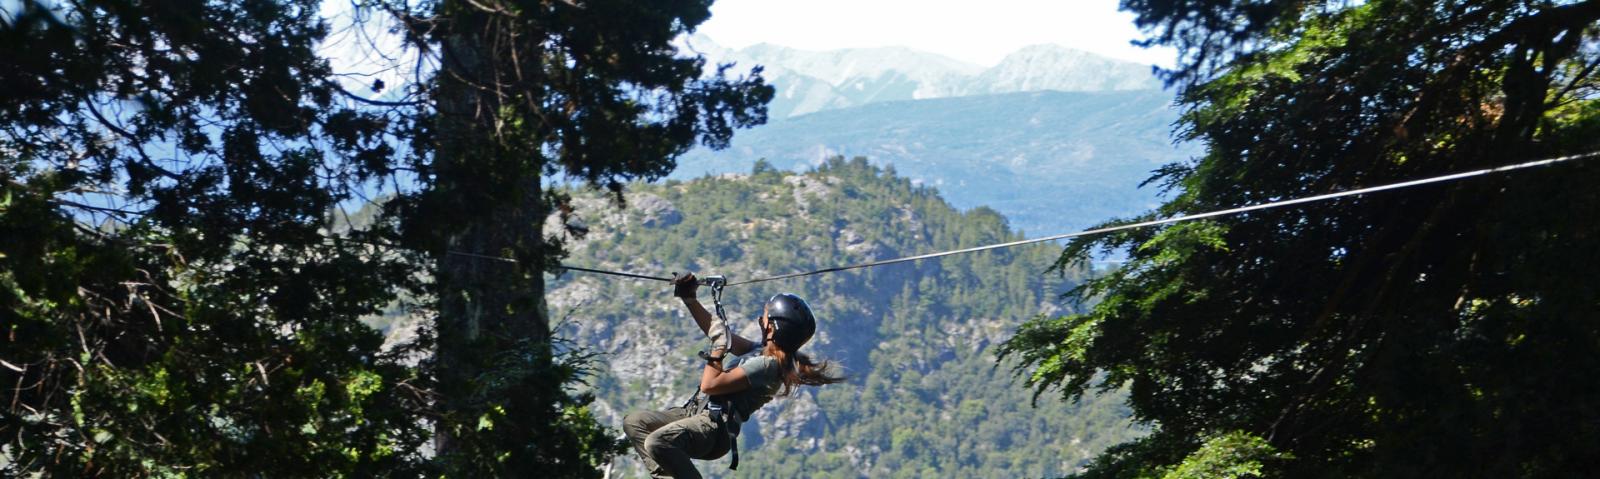 Canopy - Excursiones - Bariloche